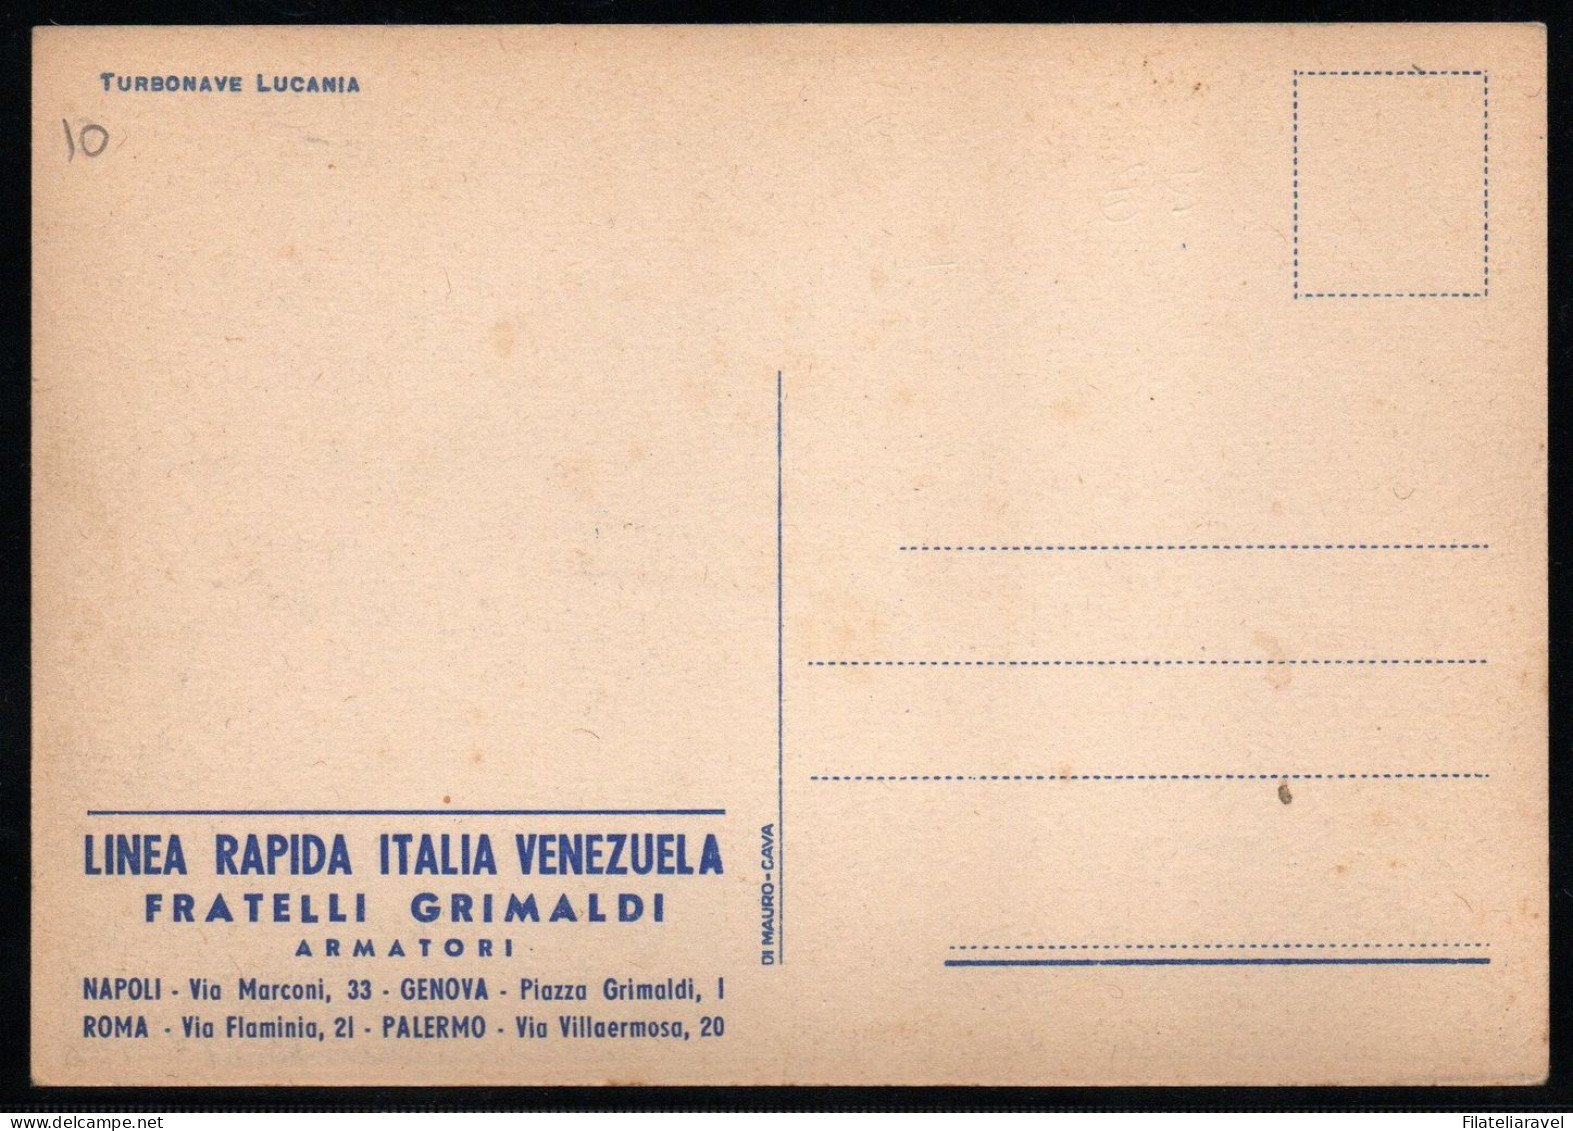 cart Cartolina 1950 - Navi da Crociera Lotto di 200 cartoline nuove/viaggiate (Lloyd-Costa Crociere-Italia-Span)